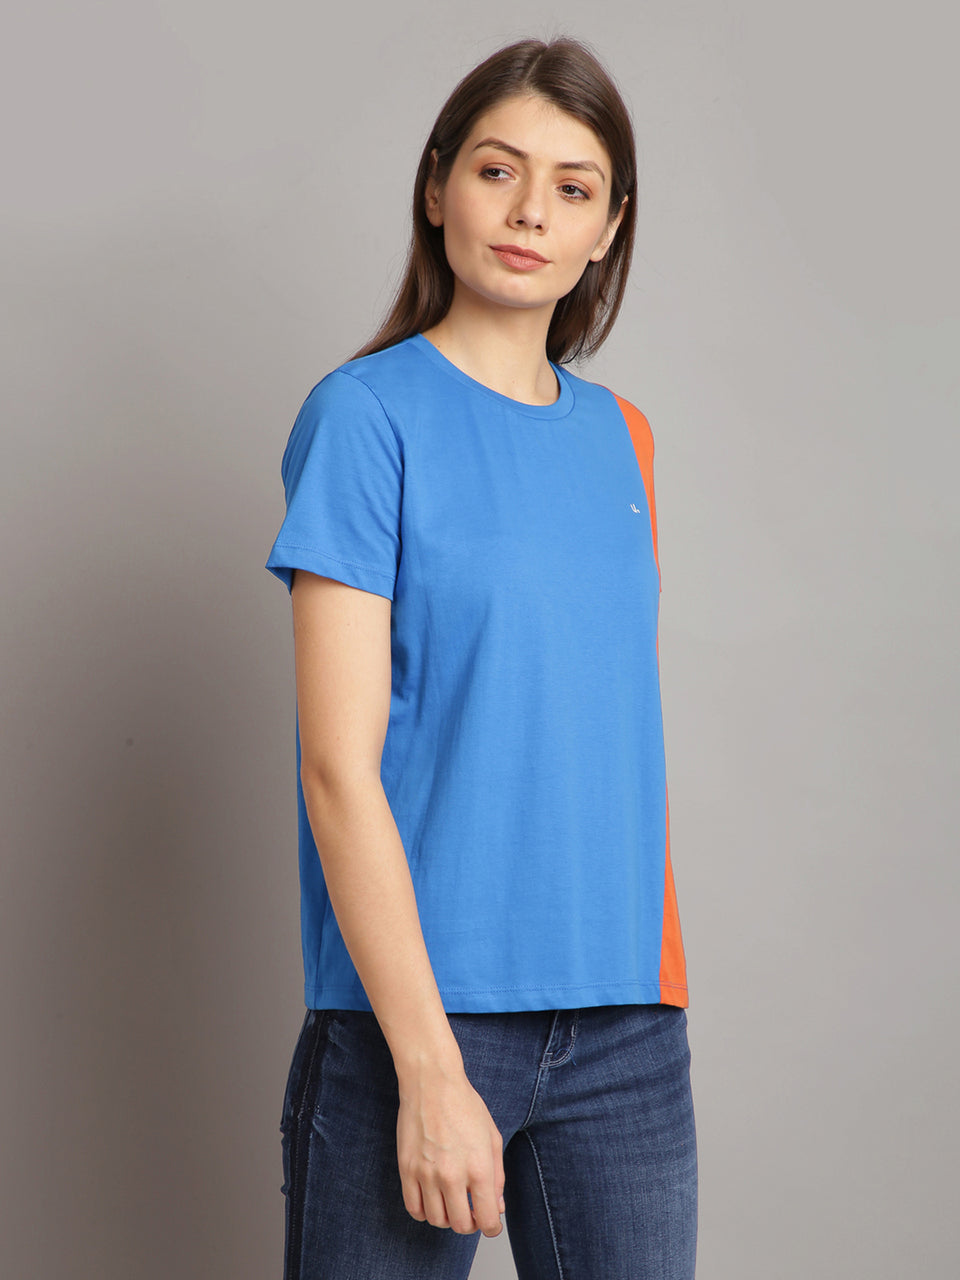 women sky blue & orange cotton round neck t-shirt